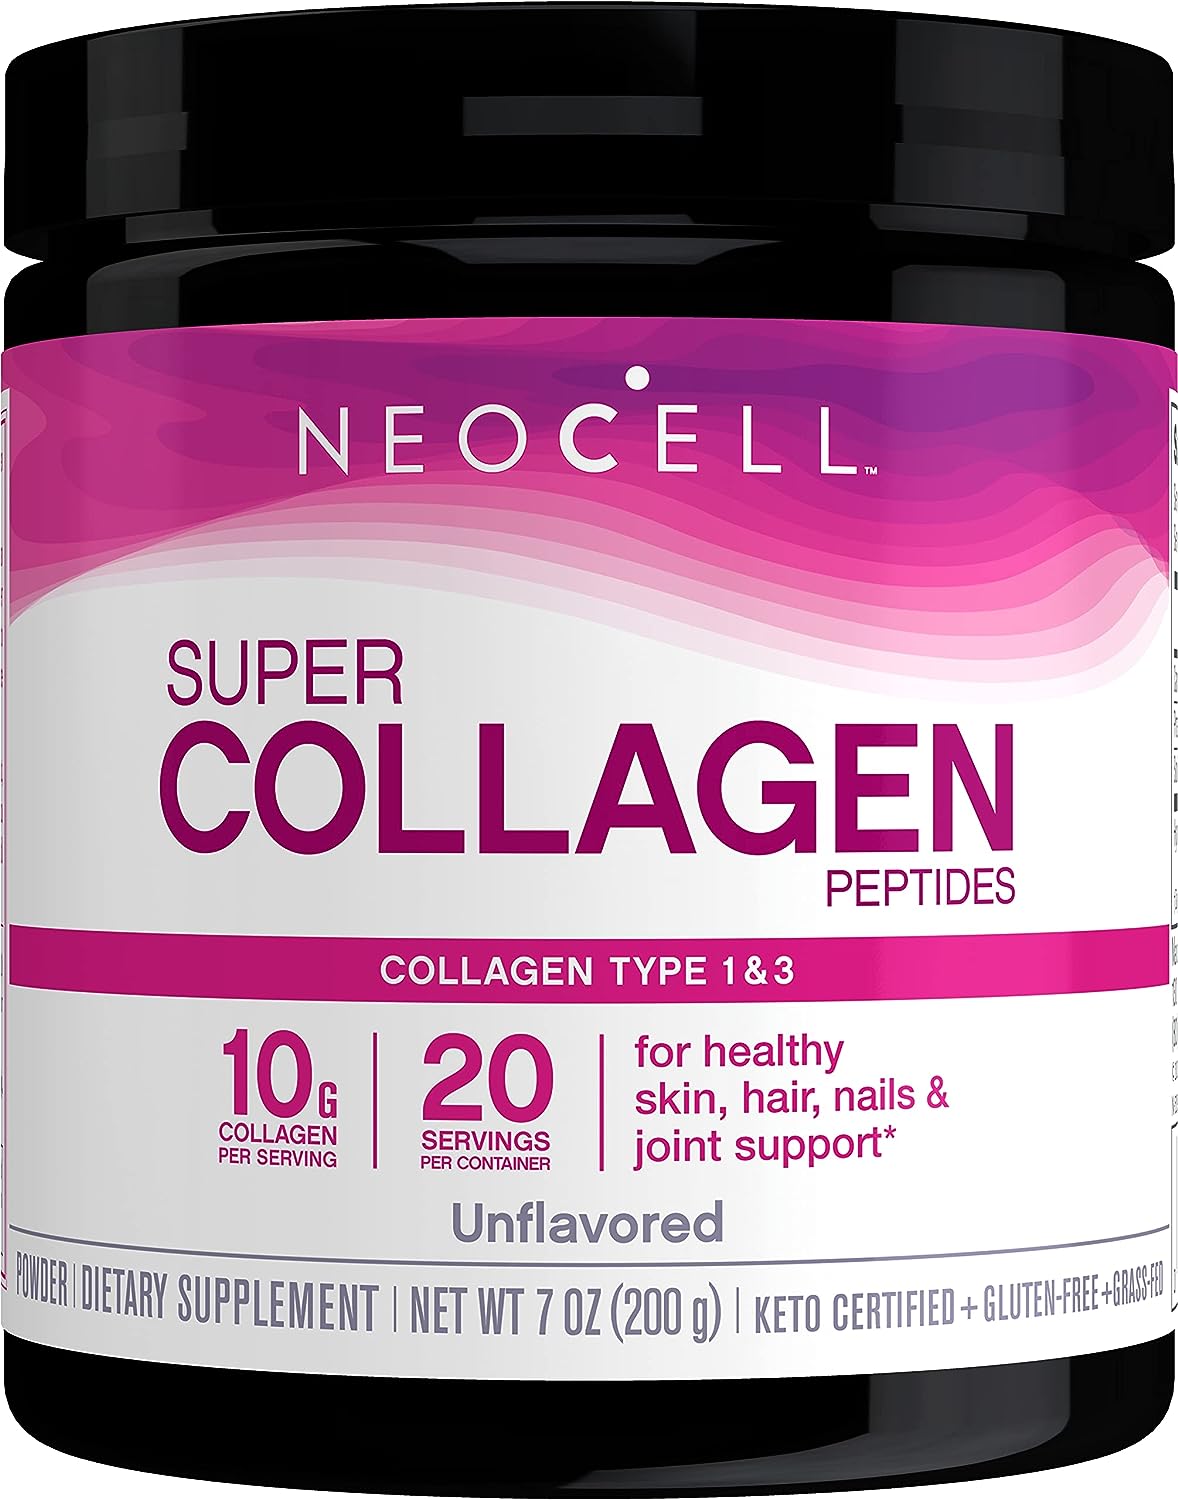 NeoCell Super Collagen Powder, 10g Collagen Peptid…